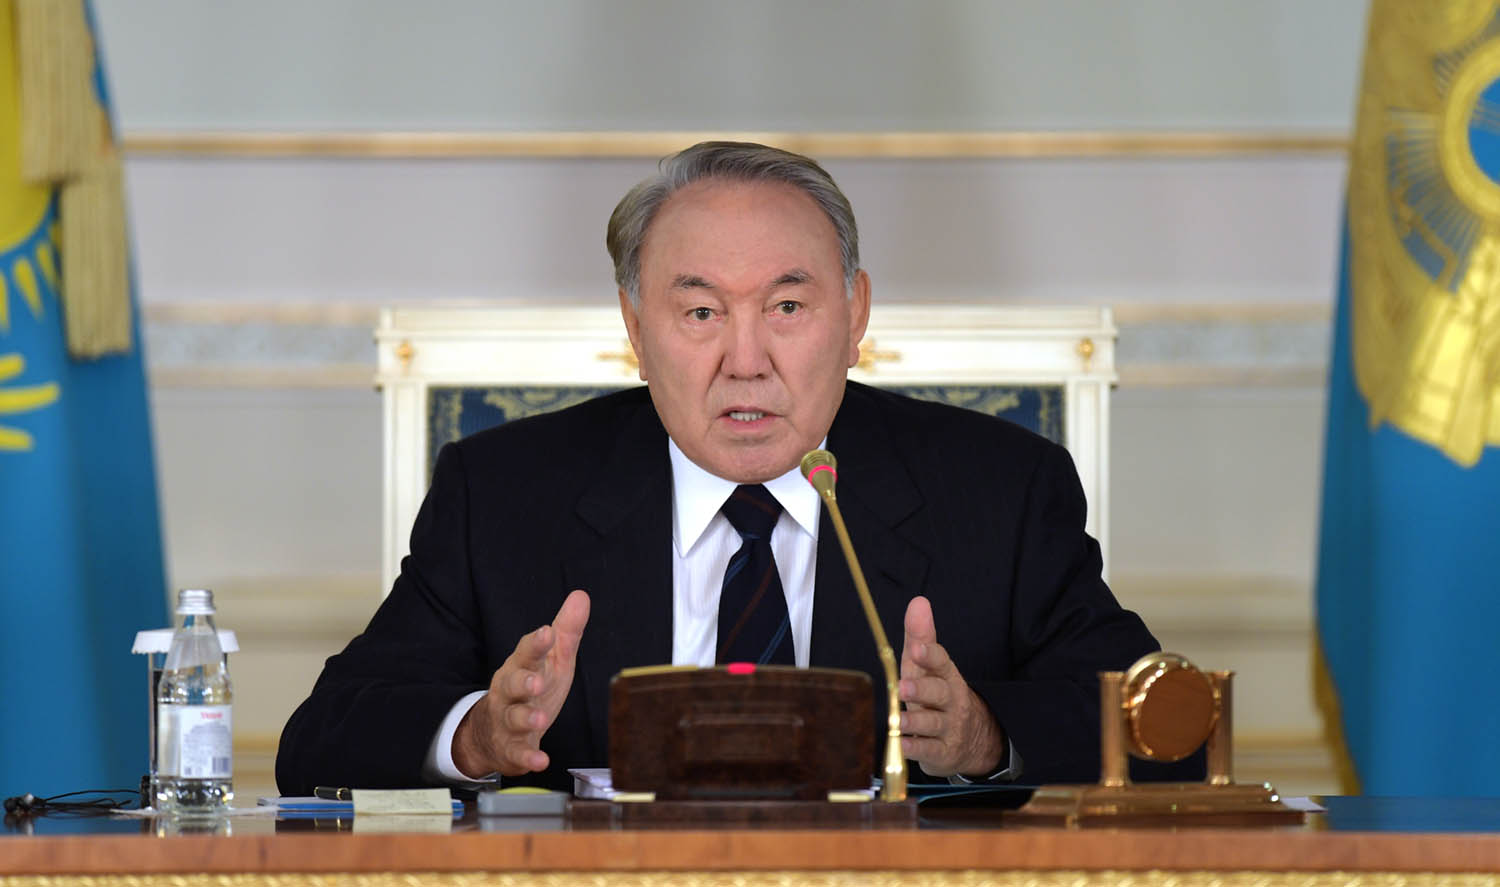 Нурсултан Назарбаев опроверг слухи о досрочных президентских выборах в РК 